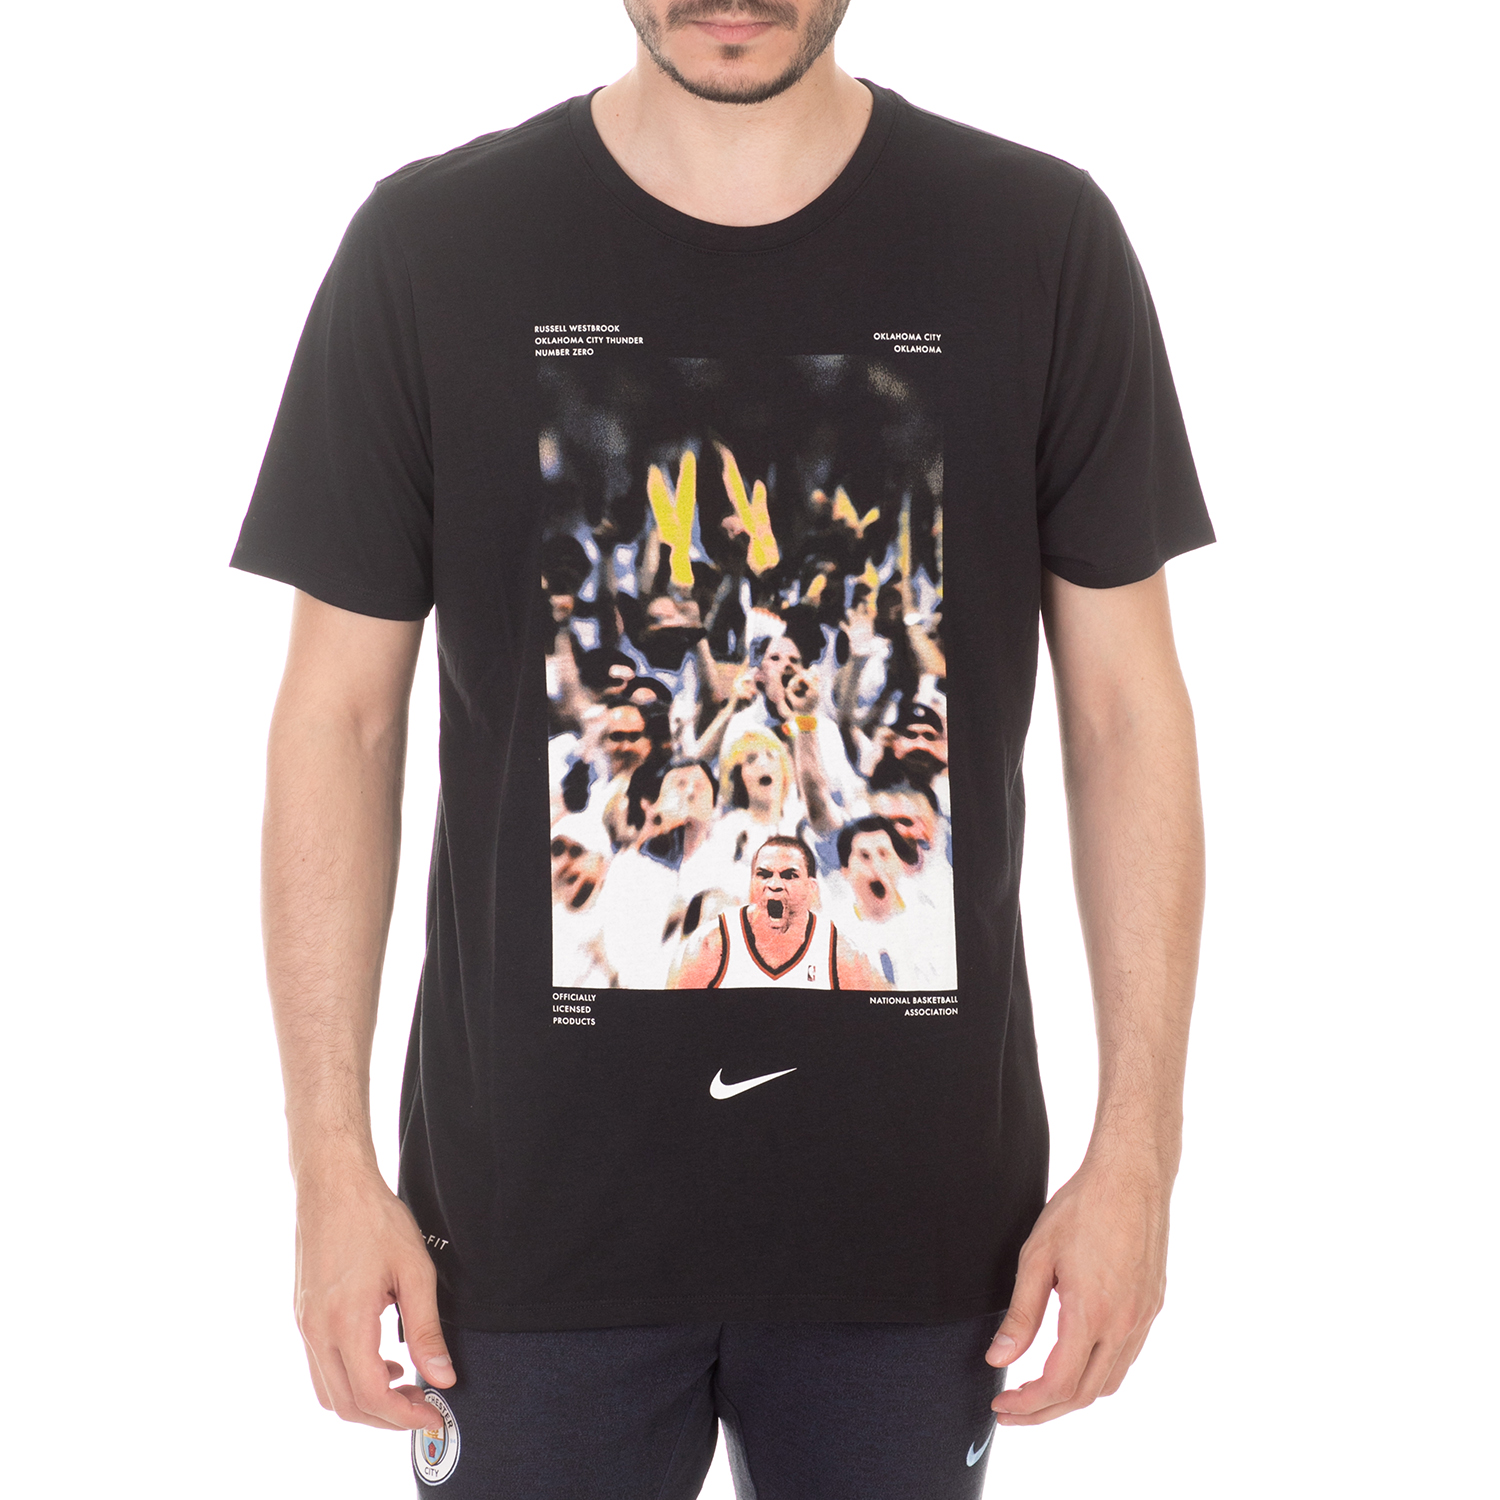 Ανδρικά/Ρούχα/Αθλητικά/T-shirt NIKE - Ανδρικό t-shirt NIKE NBA M NK DRY TEE PPACK 13 μαύρο